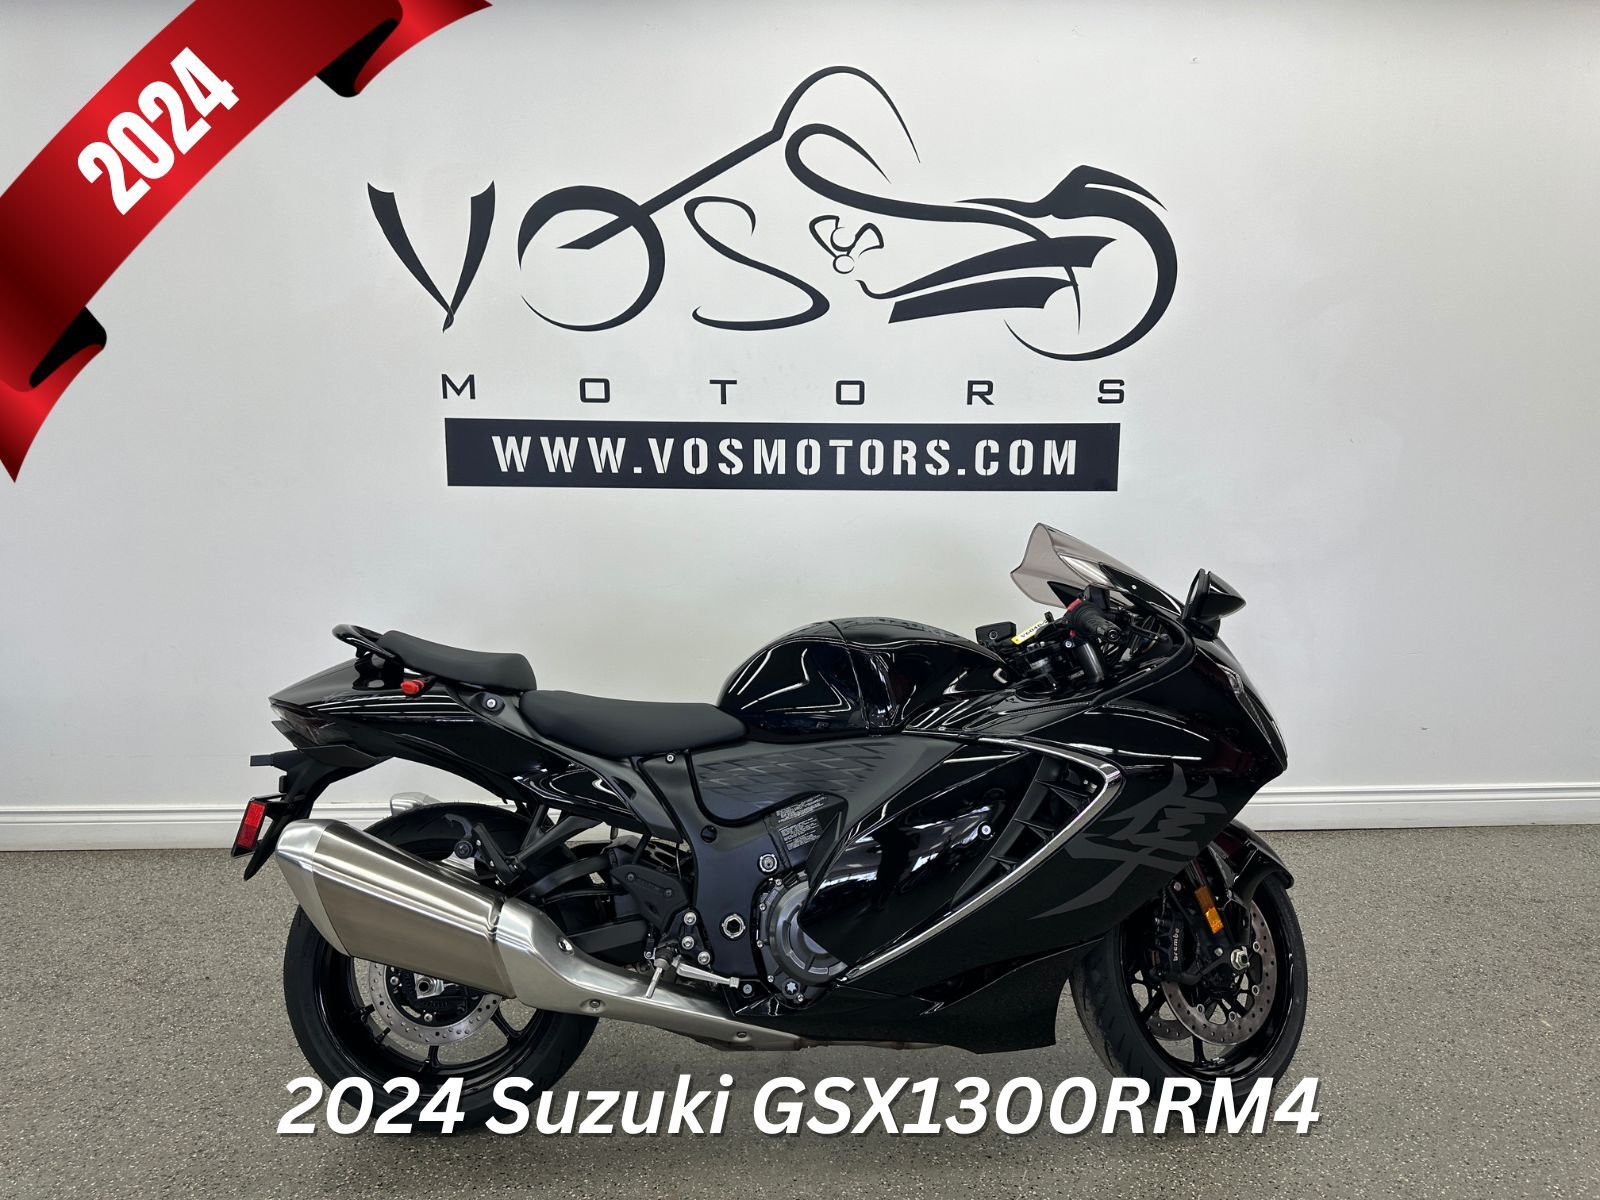 2024 Suzuki GSX1300RRM4 GSX1300RRM4 - V6040NP - -Financing Available**